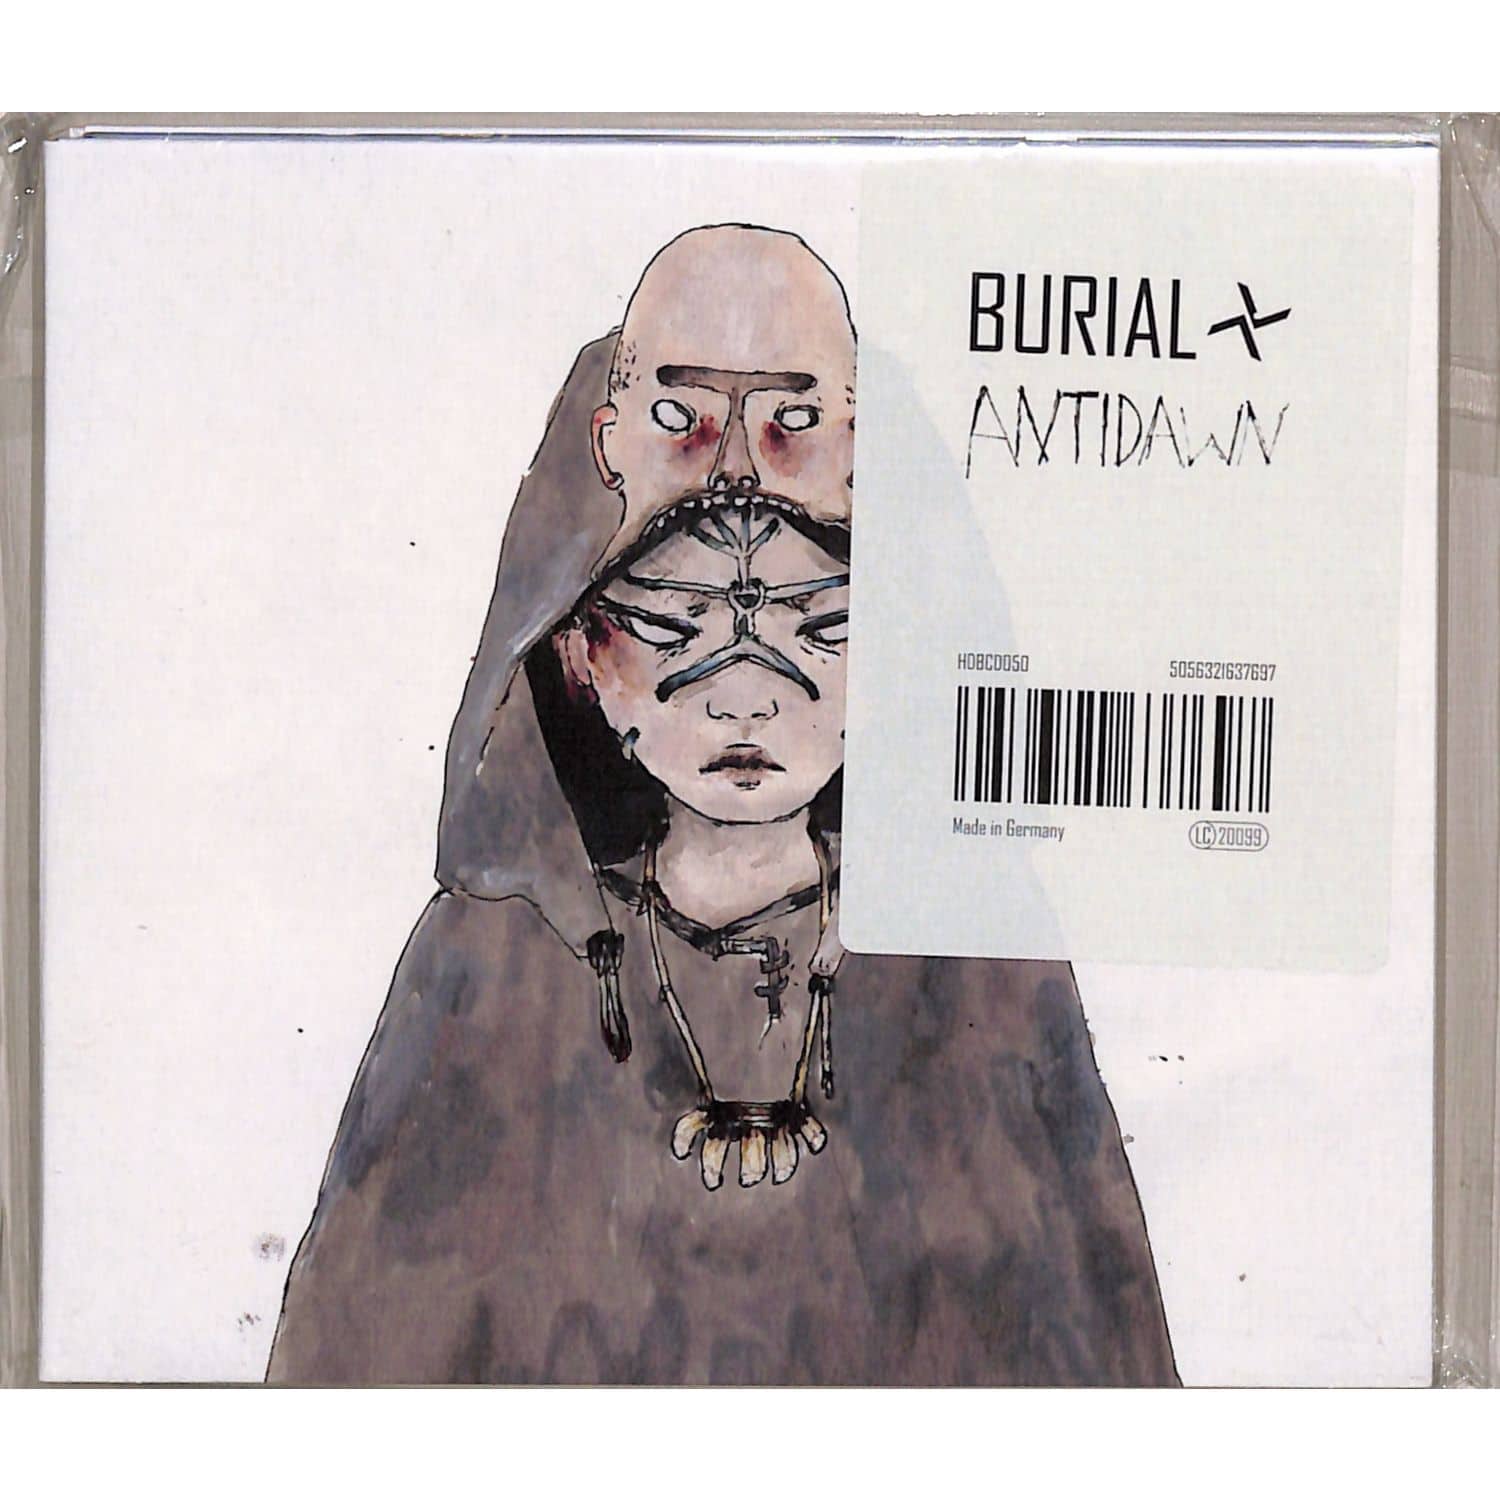 Burial - ANTIDAWN 